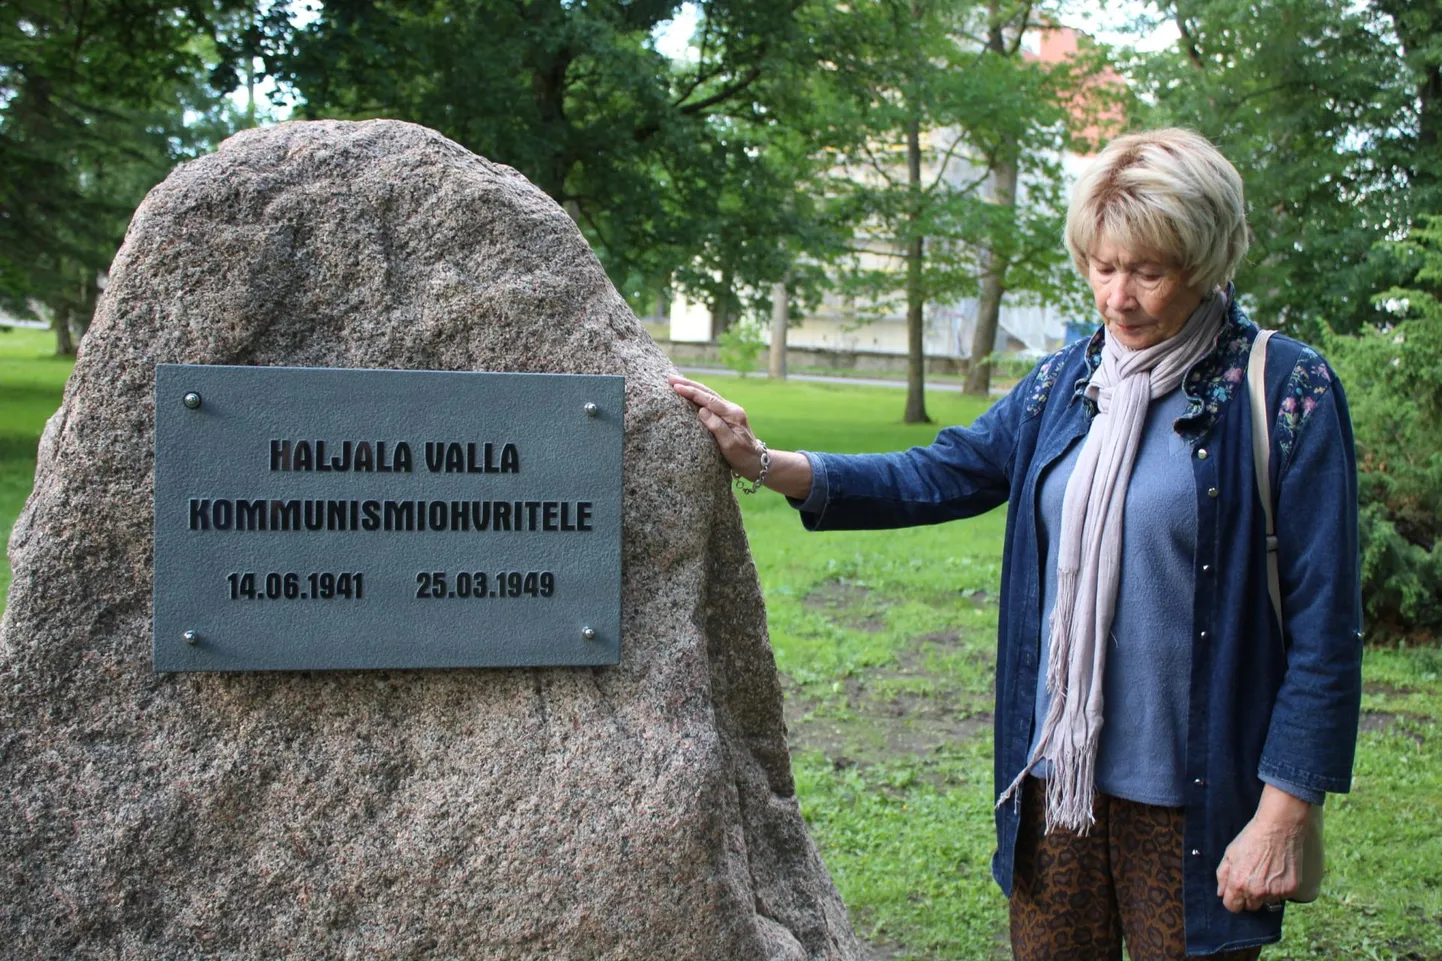 Mai-Ruth Kõrgend Haljala kommunismiohvrite mälestuskivi kõrval.